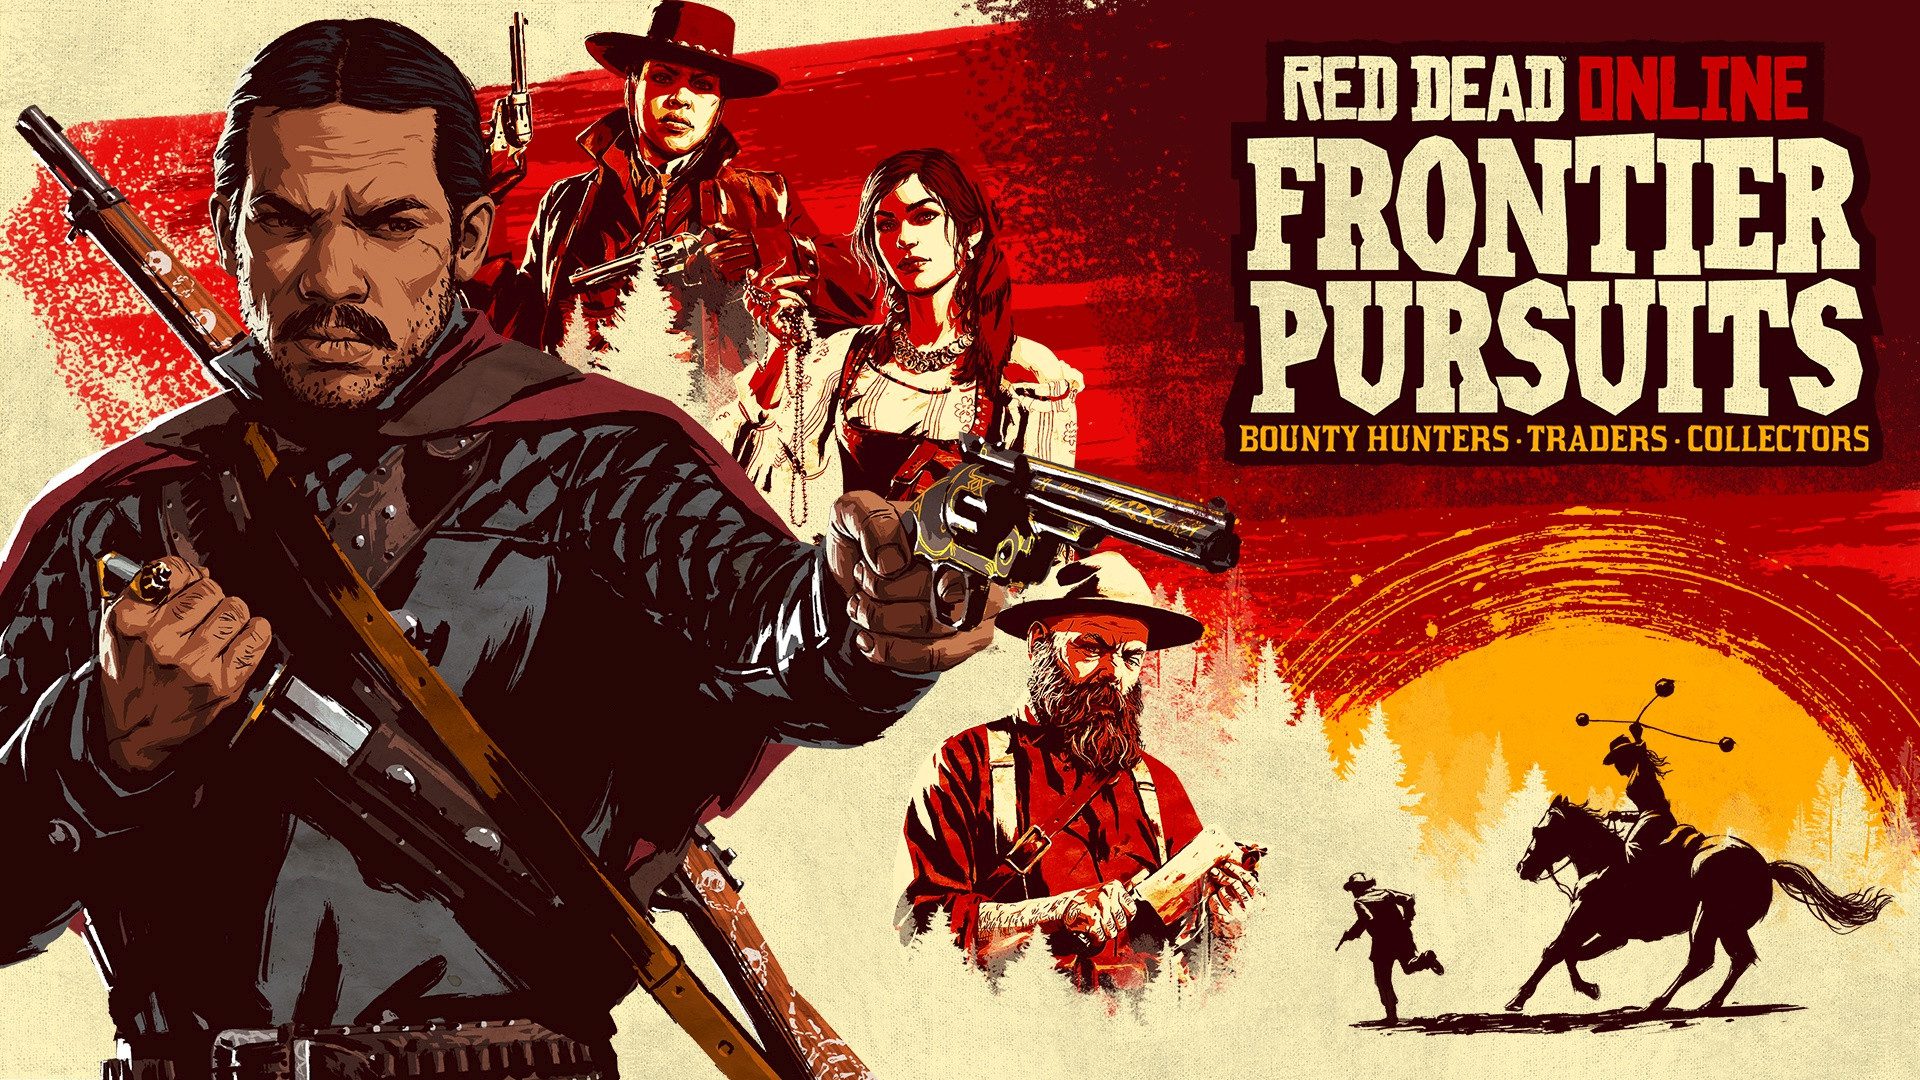 Read Dead Online: Frontier Pursuits jetzt auf Xbox One mit neuen Rollen, Outlaw Pass und mehr verfügbar